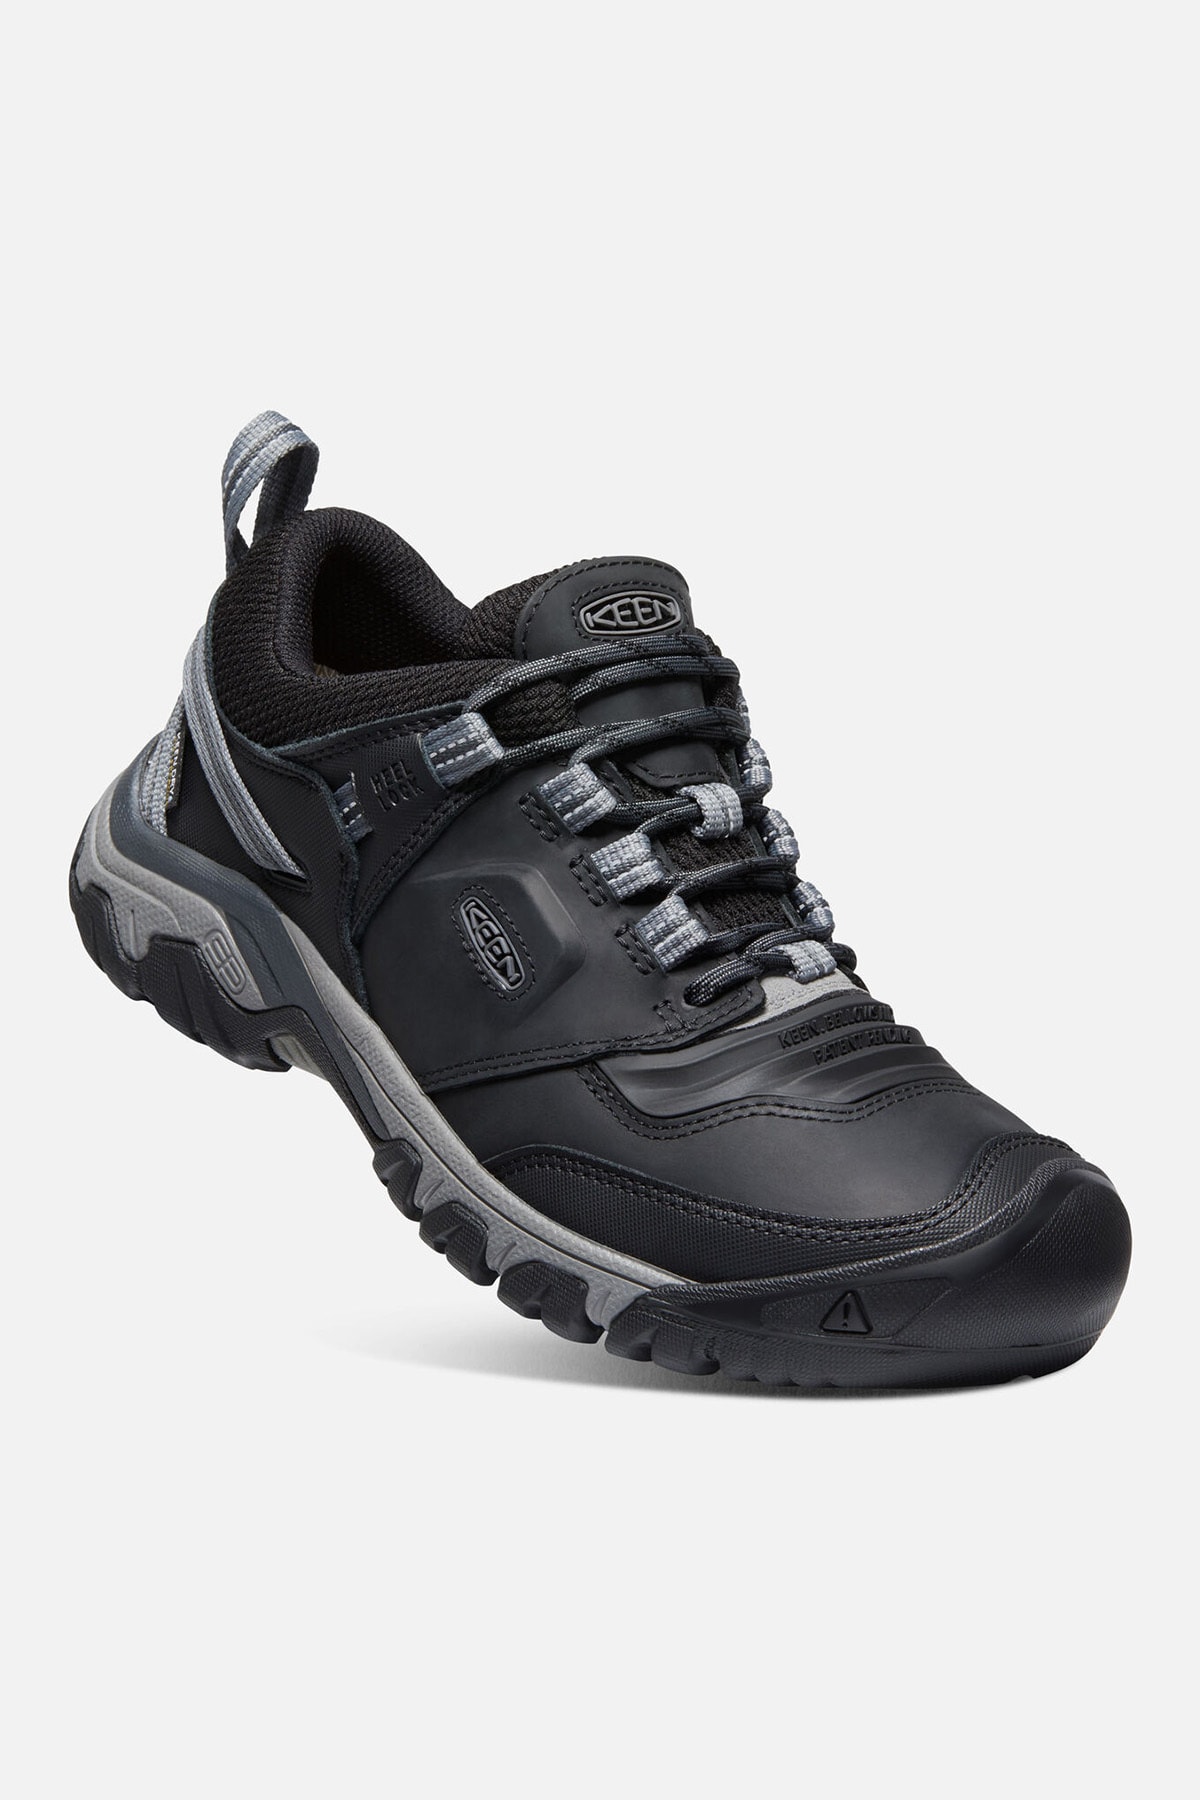 Keen Ridge Flex Wp M-black/magnet - Su Geçirmez Erkek Yürüyüş Ayakkabısı - Siyah